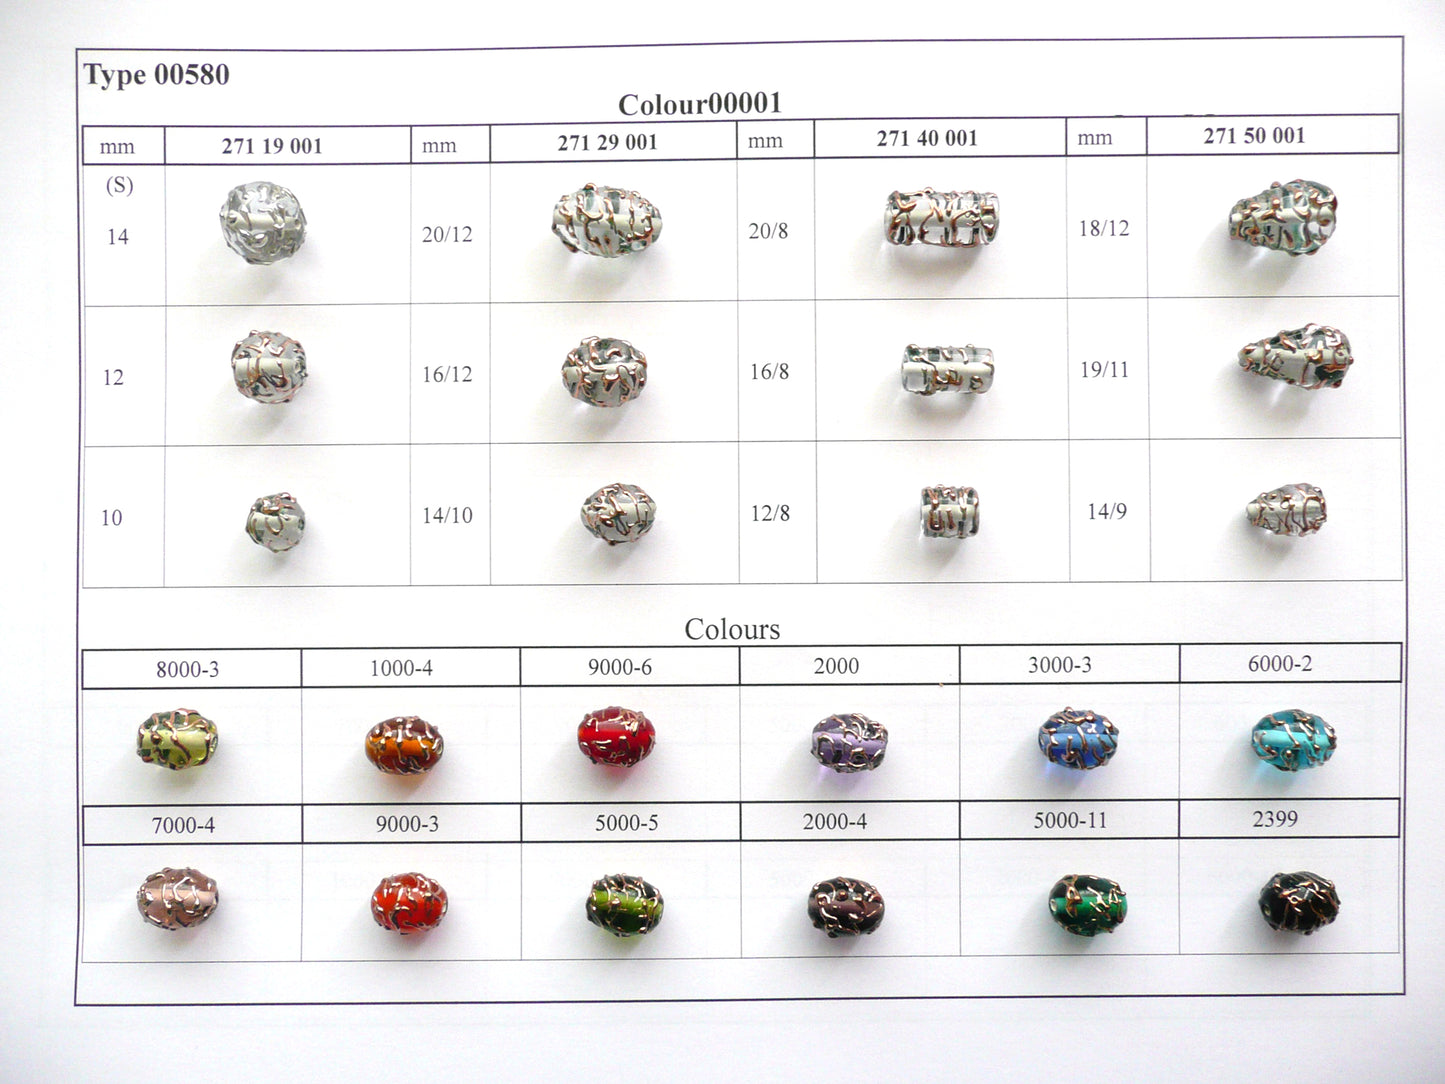 30 pcs Lampwork Beads Pearl Decor PD580 / Cylinder (271-40-001), Handmade, Preciosa Glass, Czech Republic